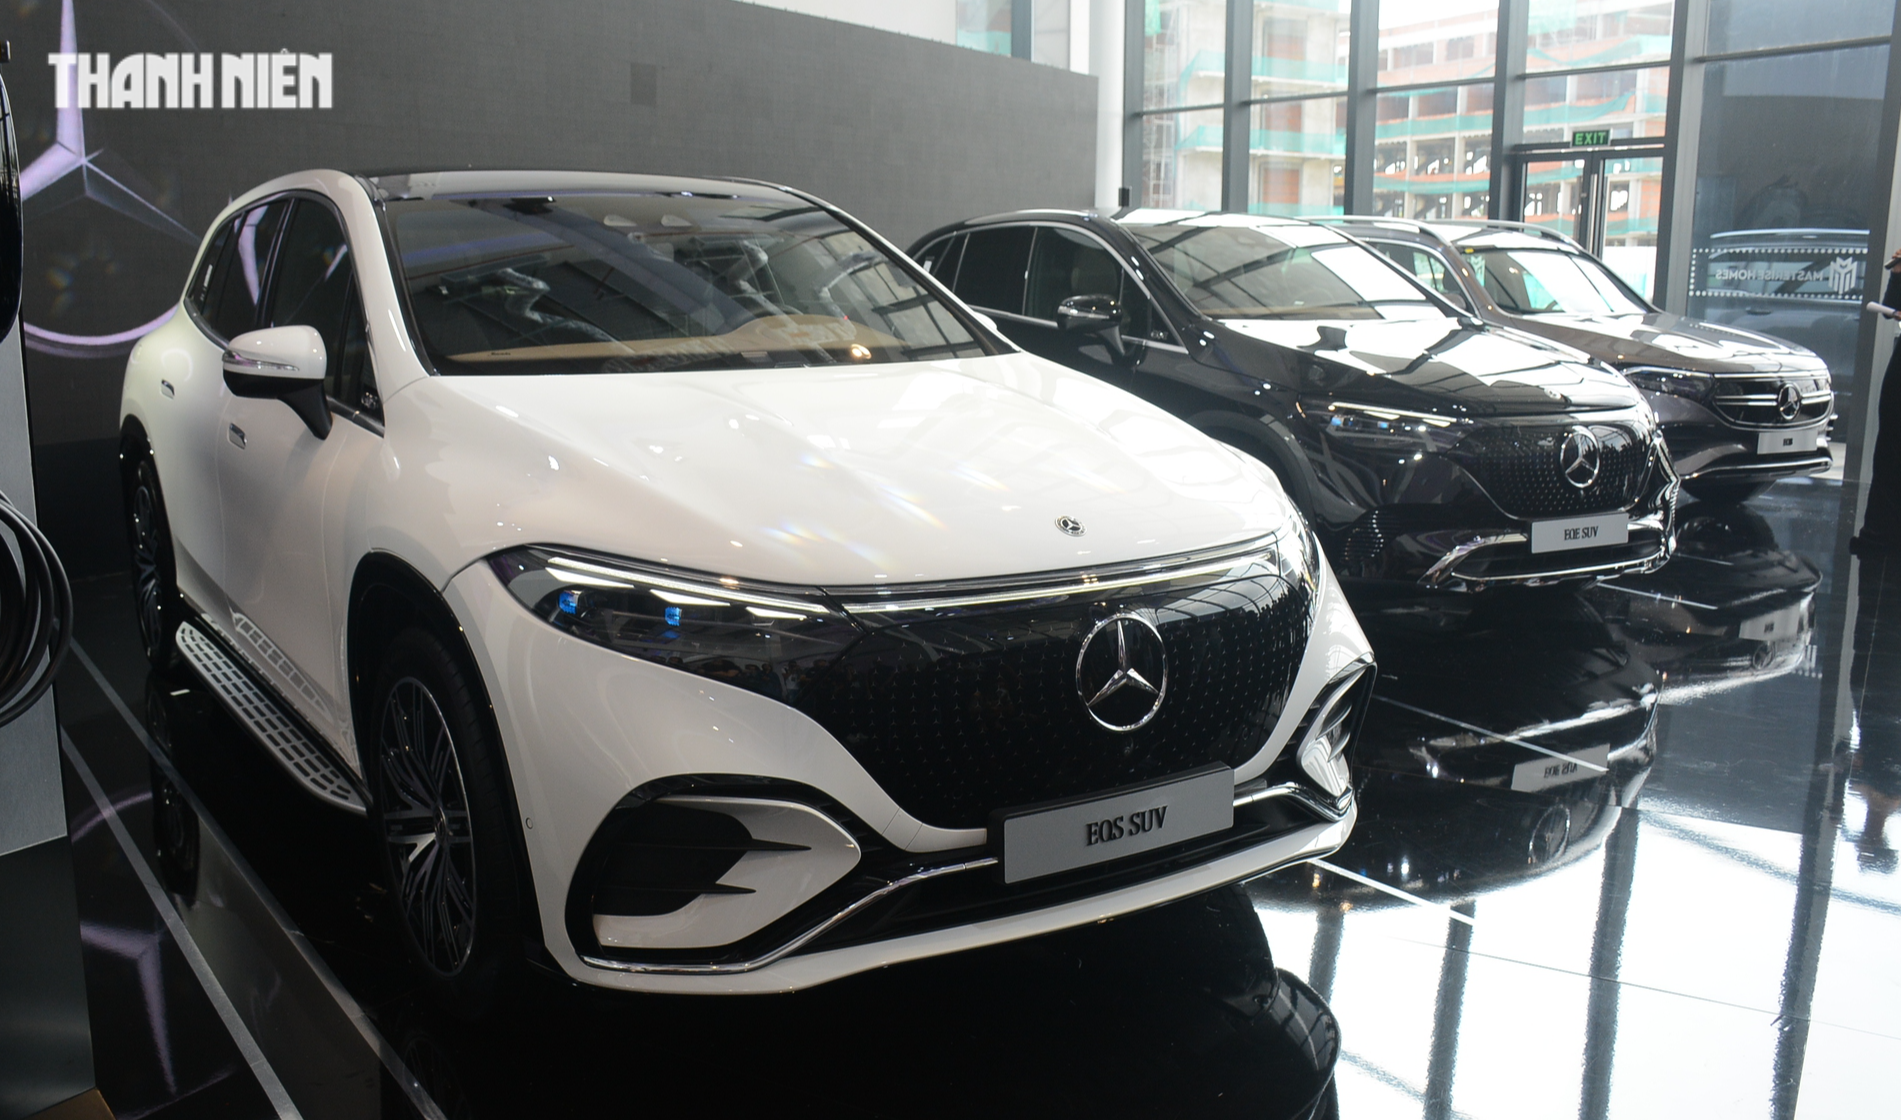 Mercedes trình làng 3 mẫu xe SUV điện, cạnh tranh BMW tại Việt Nam - Ảnh 1.